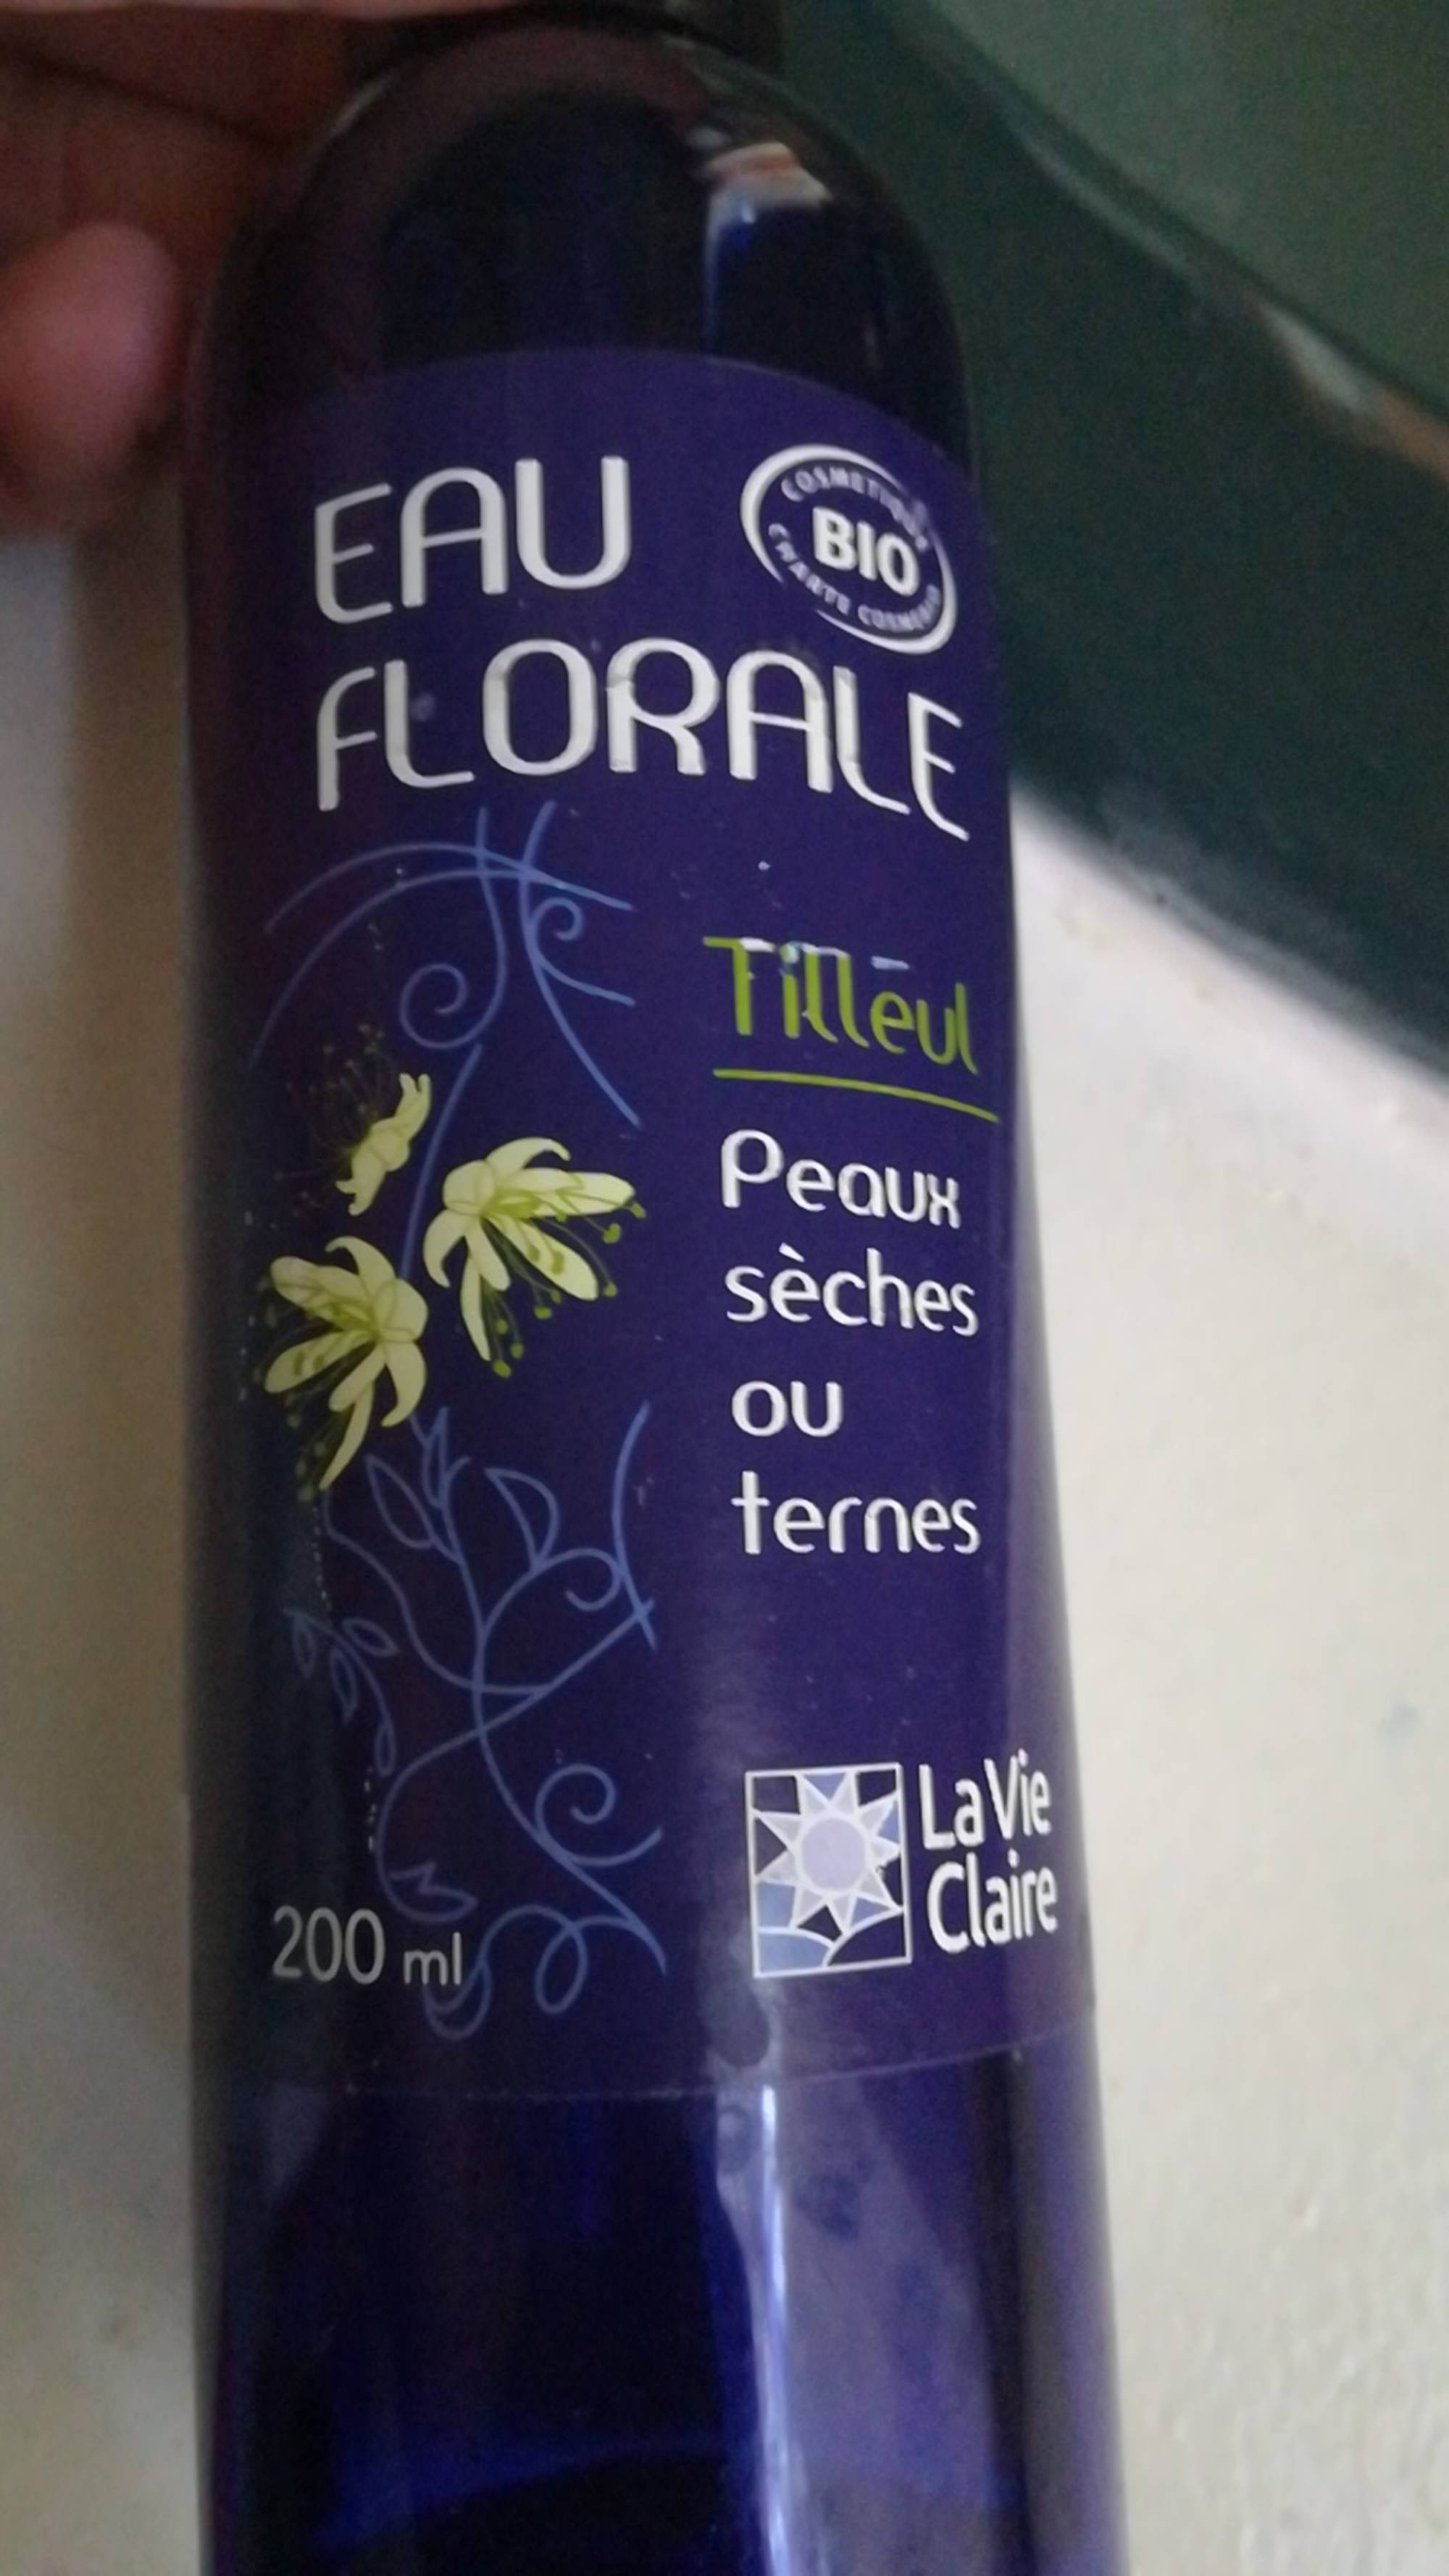 LA VIE CLAIRE - Tilleul - Eau florale